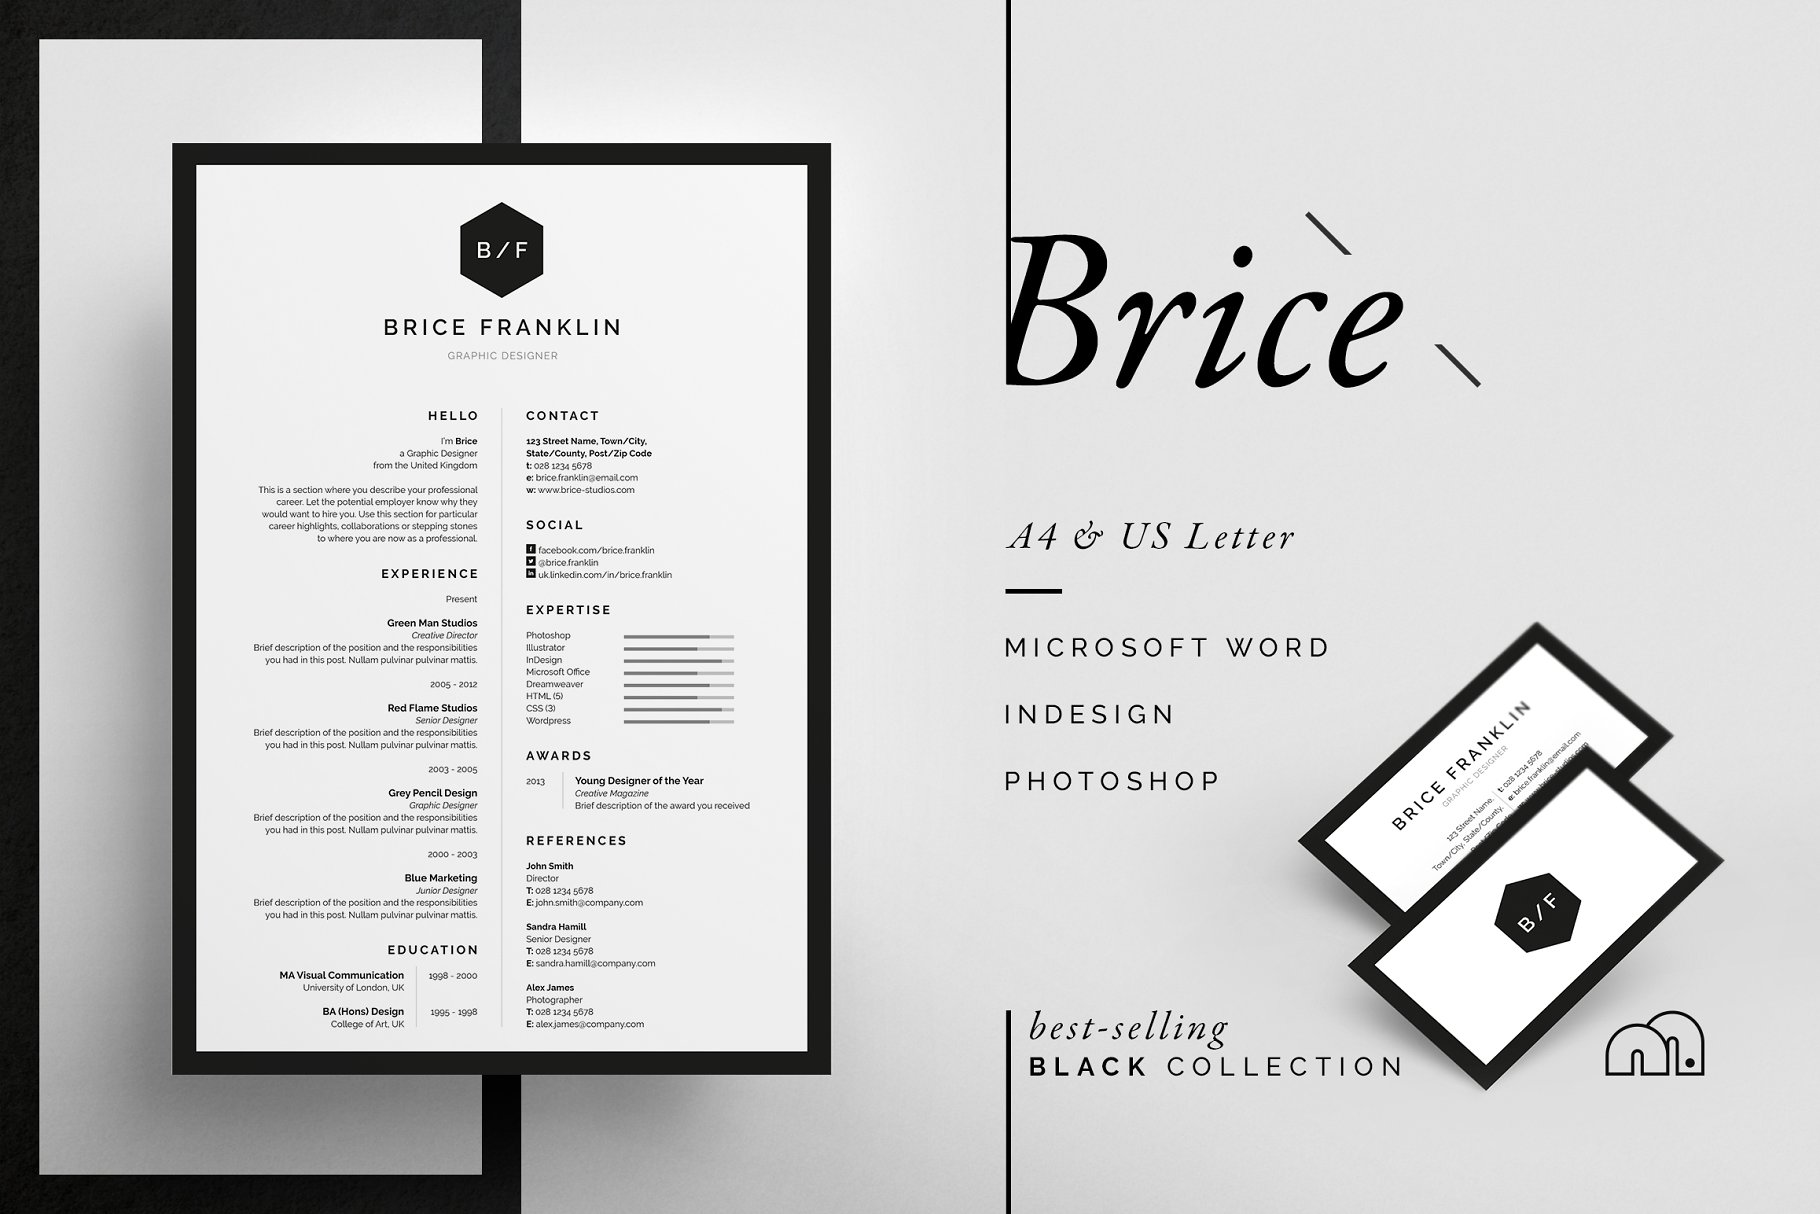 居中垂直排版风格个人简历模板 Brice – Resume/CV插图